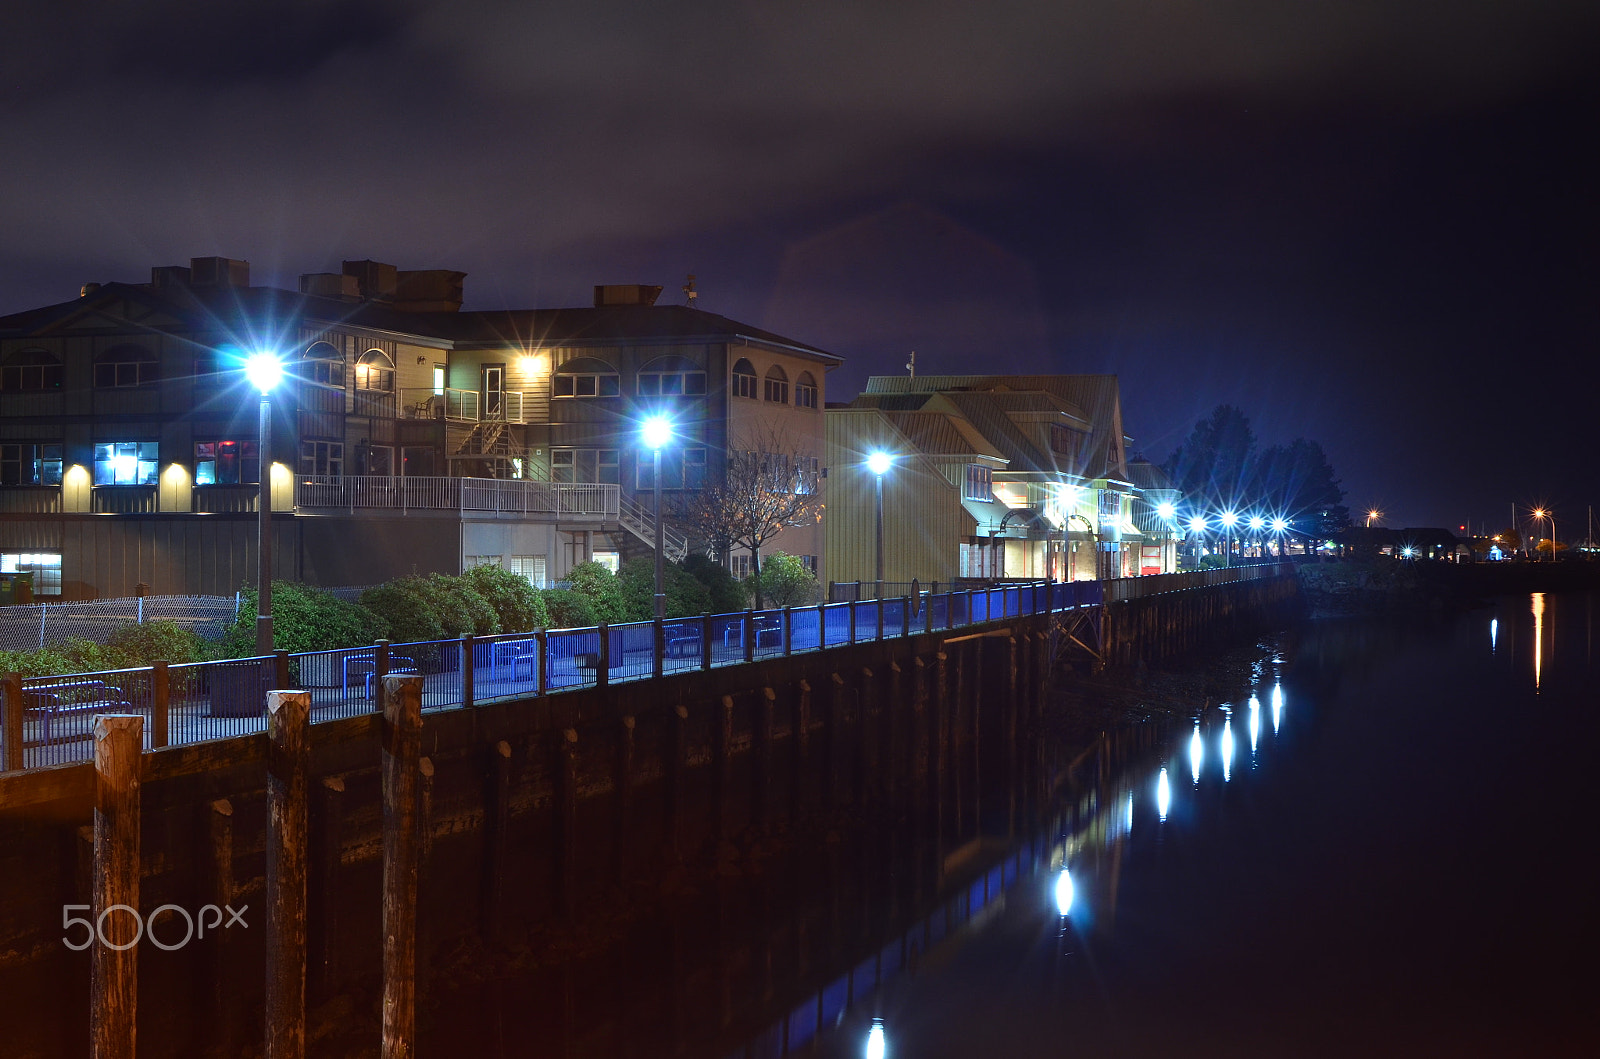 Nikon D7000 + AF Zoom-Nikkor 35-80mm f/4-5.6D N sample photo. Campbell river docks at night photography